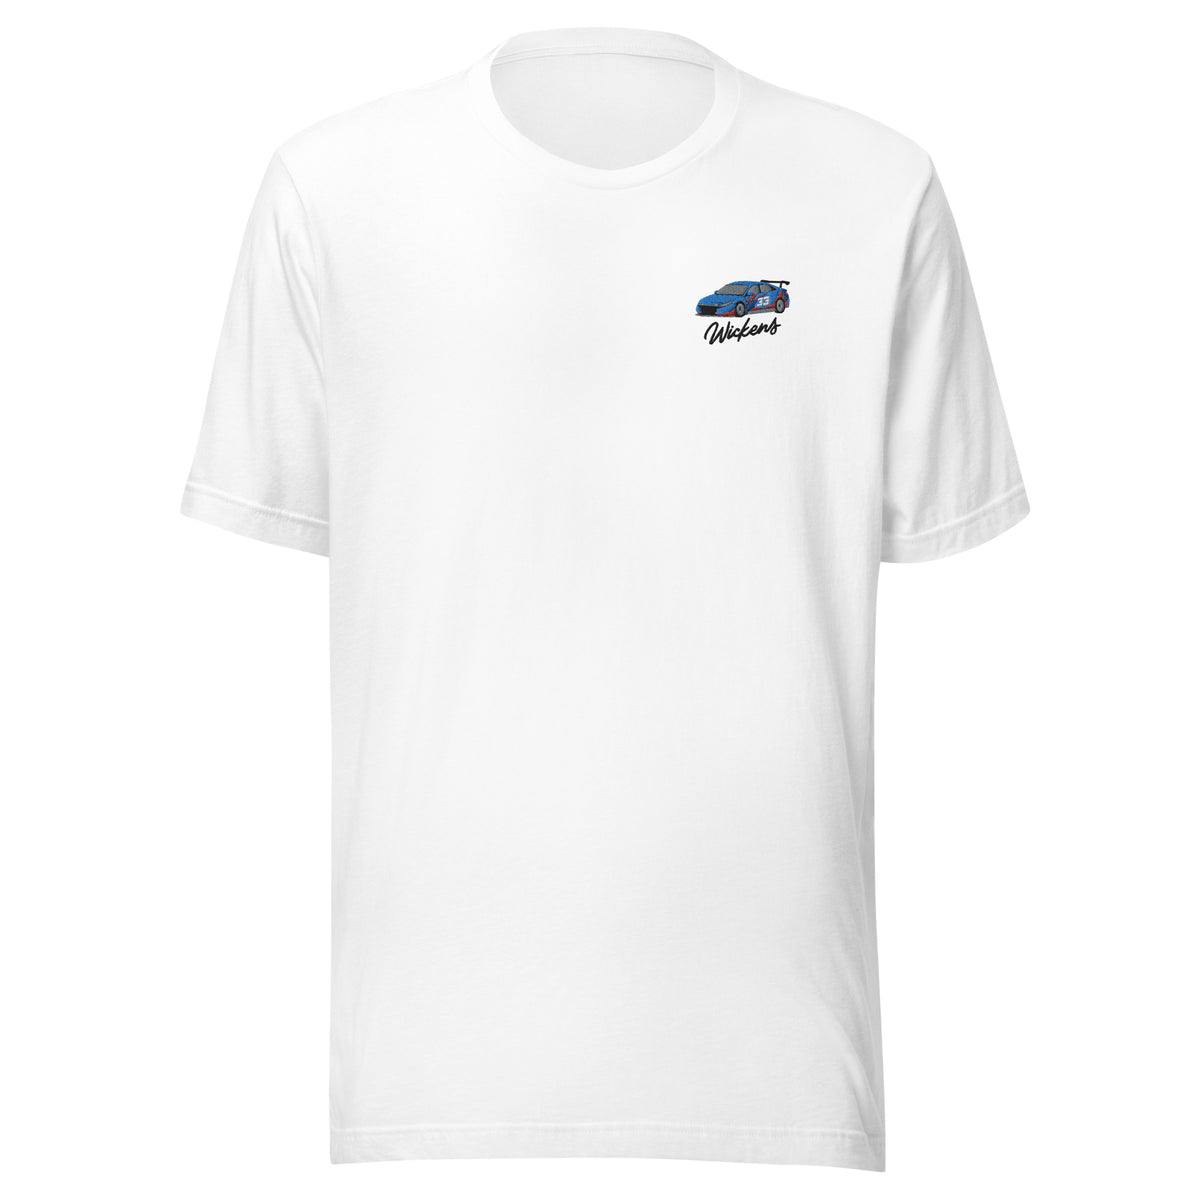 Robert Wickens Custom Plaid Men's T-shirt – Official Robert